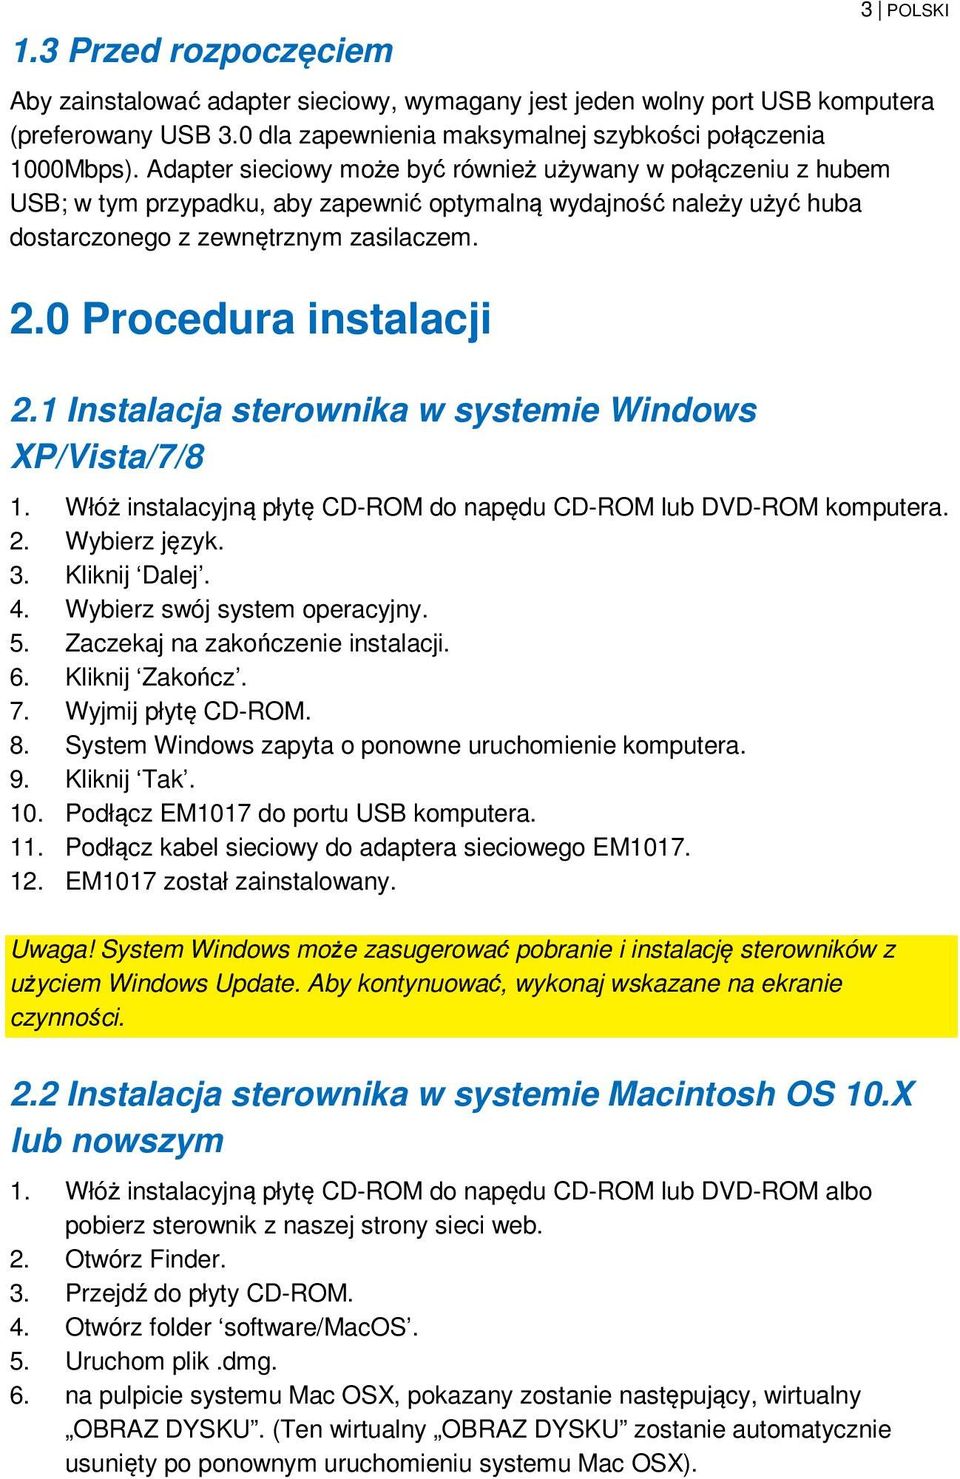 0 Procedura instalacji 2.1 Instalacja sterownika w systemie Windows XP/Vista/7/8 1. Włóż instalacyjną płytę CD-ROM do napędu CD-ROM lub DVD-ROM komputera. 2. Wybierz język. 3. Kliknij Dalej. 4.